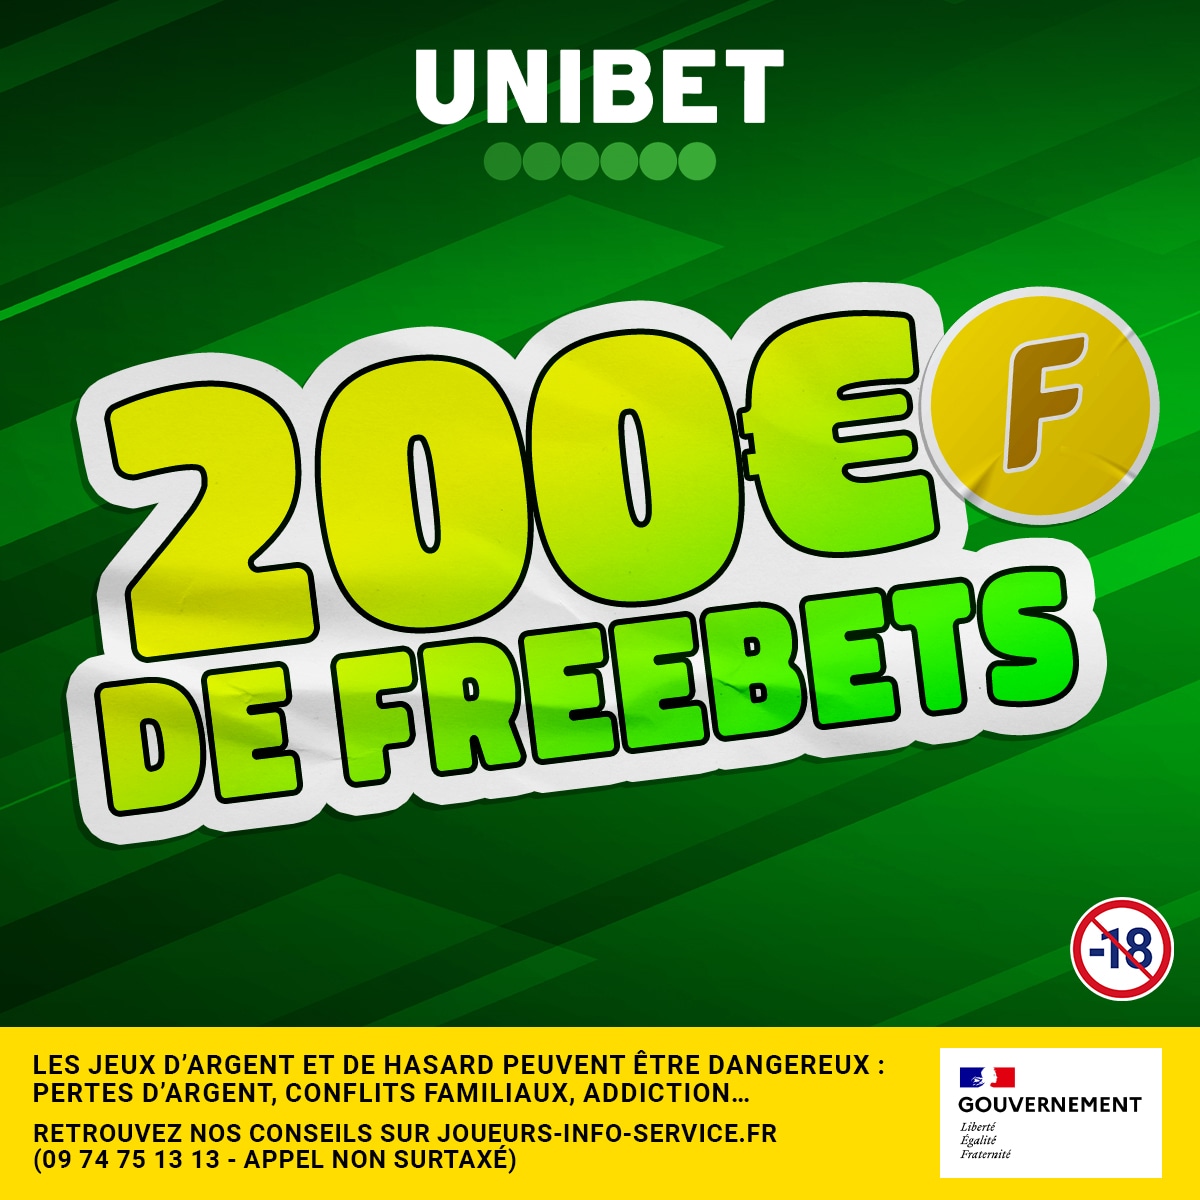 🔥 Des Freebets pour vibrer ce week-end ? 10 x 20€ à gagner si tu RT + #FreebetUnibet + pseudo 🙌 🤞 TAS Dimanche